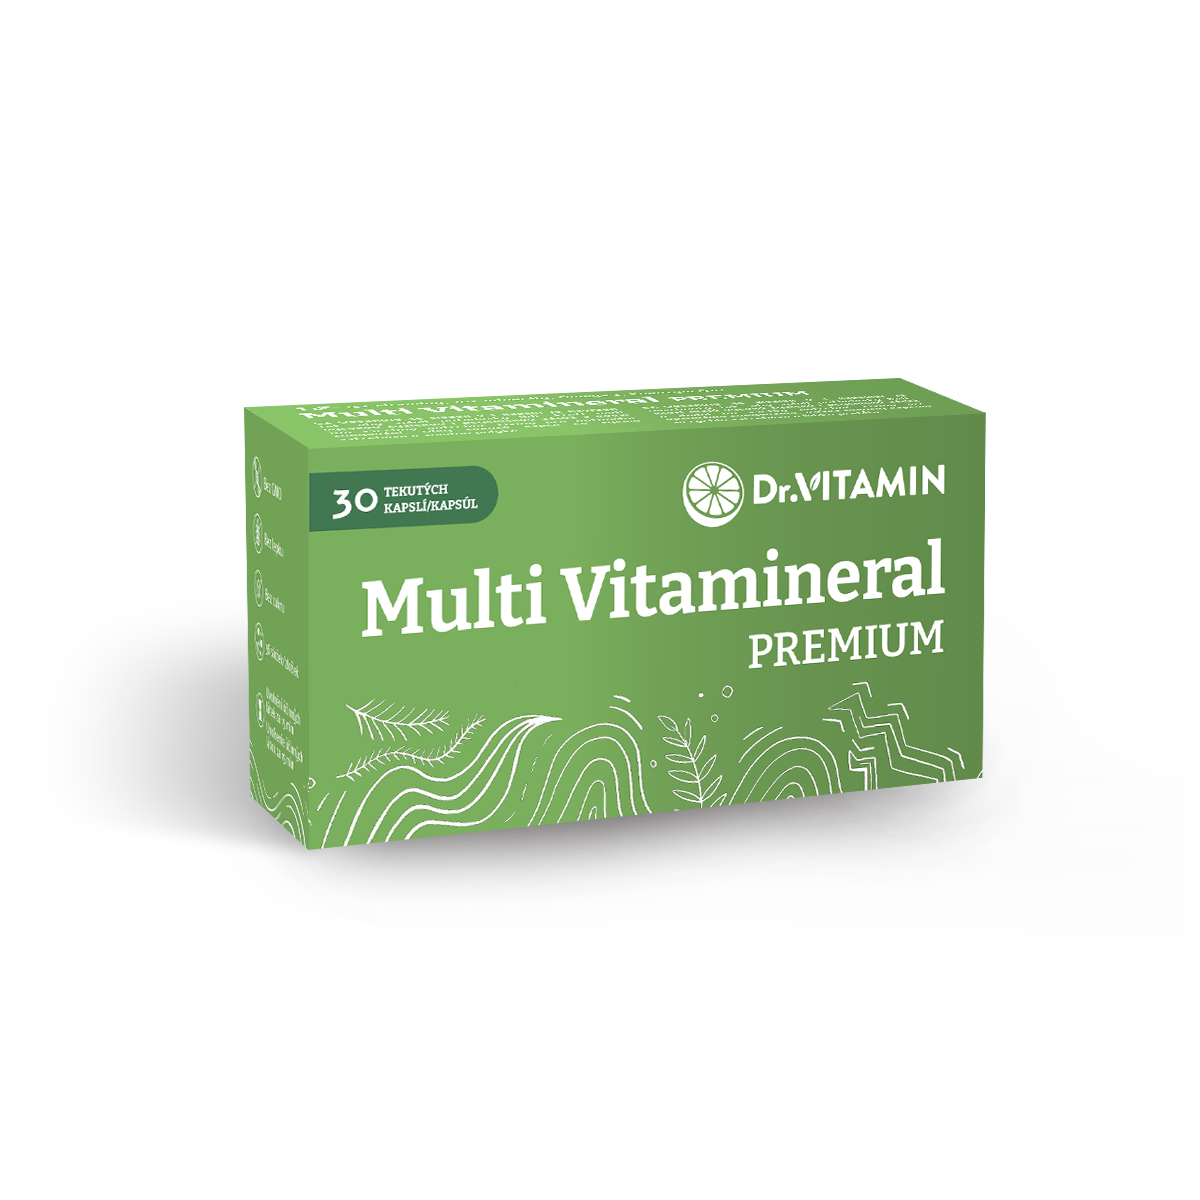 Multi Vitamineral PREMIUM 30 tekutých kapslí - 36 složek - silnější